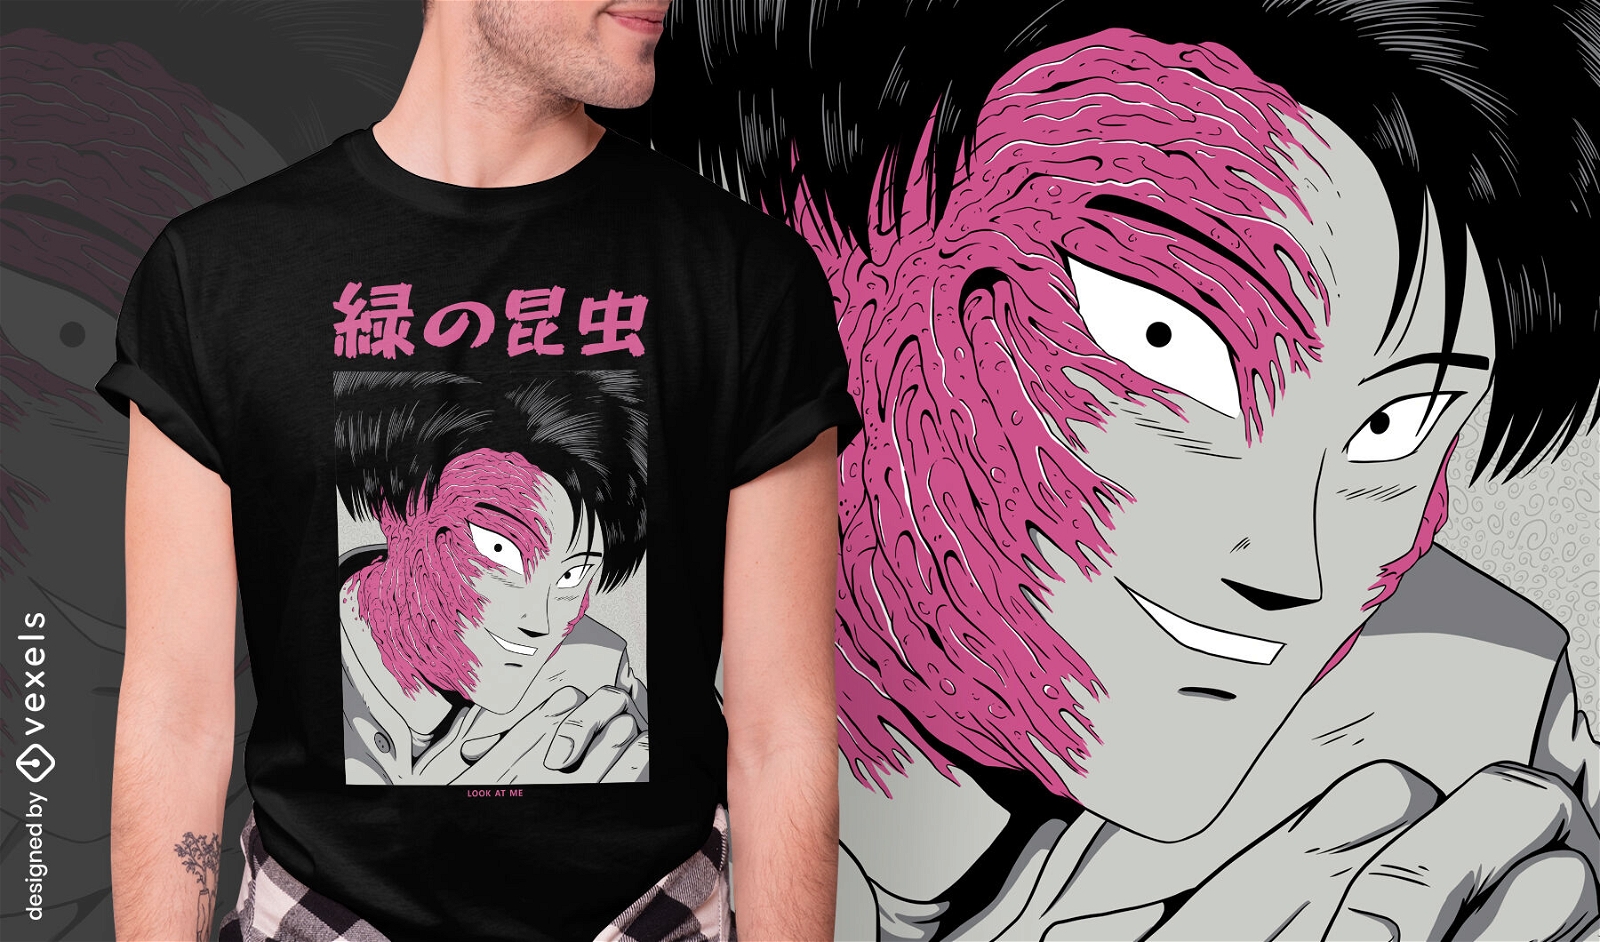 T-shirt de rosto de terror japon?s com design psd